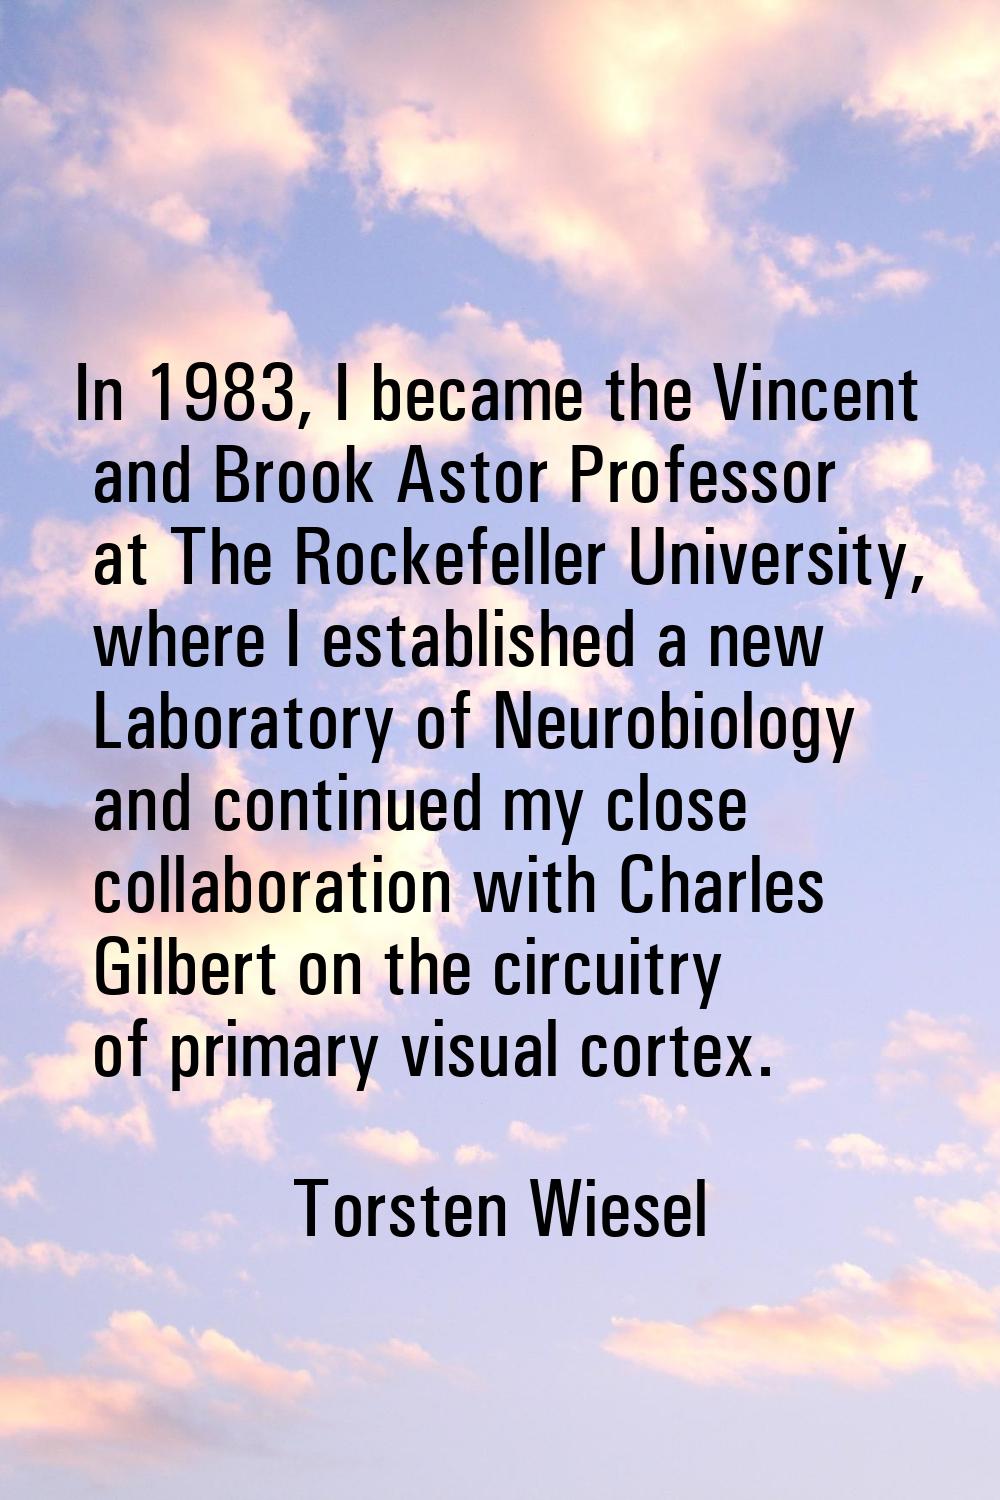 In 1983, I became the Vincent and Brook Astor Professor at The Rockefeller University, where I esta